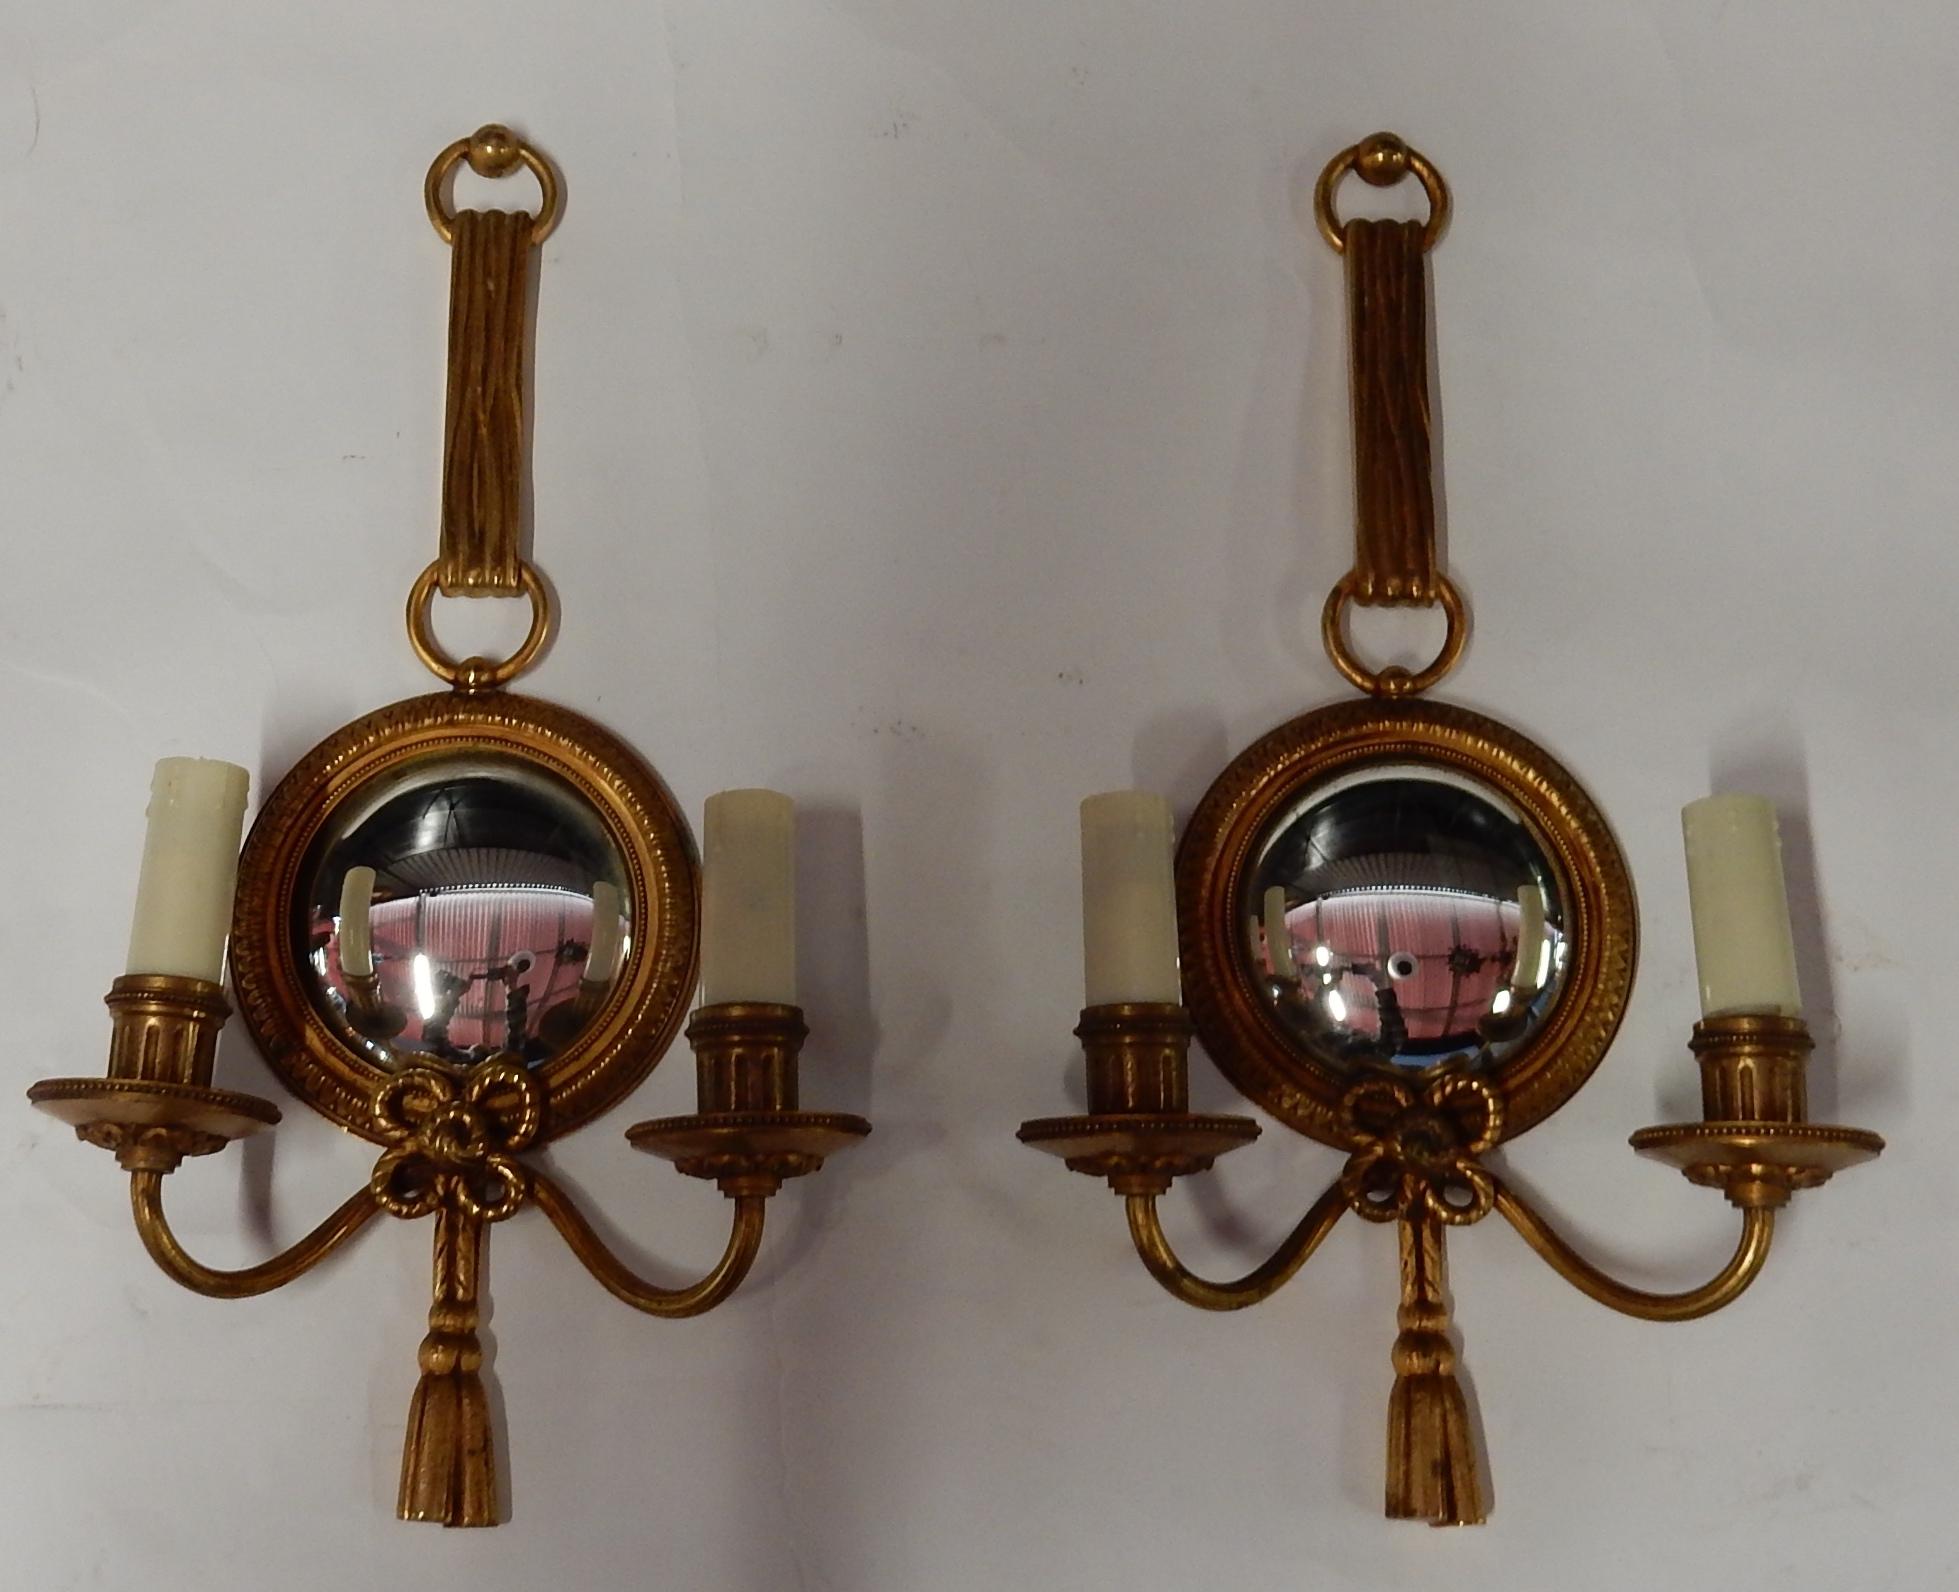 Paire d'appliques avec miroir convexe, bronze doré, bon état, signé Petitot, tout est vissé,
vers 1950-1970
Mesures : Diamètre du miroir du cadre 14 cm
Miroir de diamètre 10 cm.